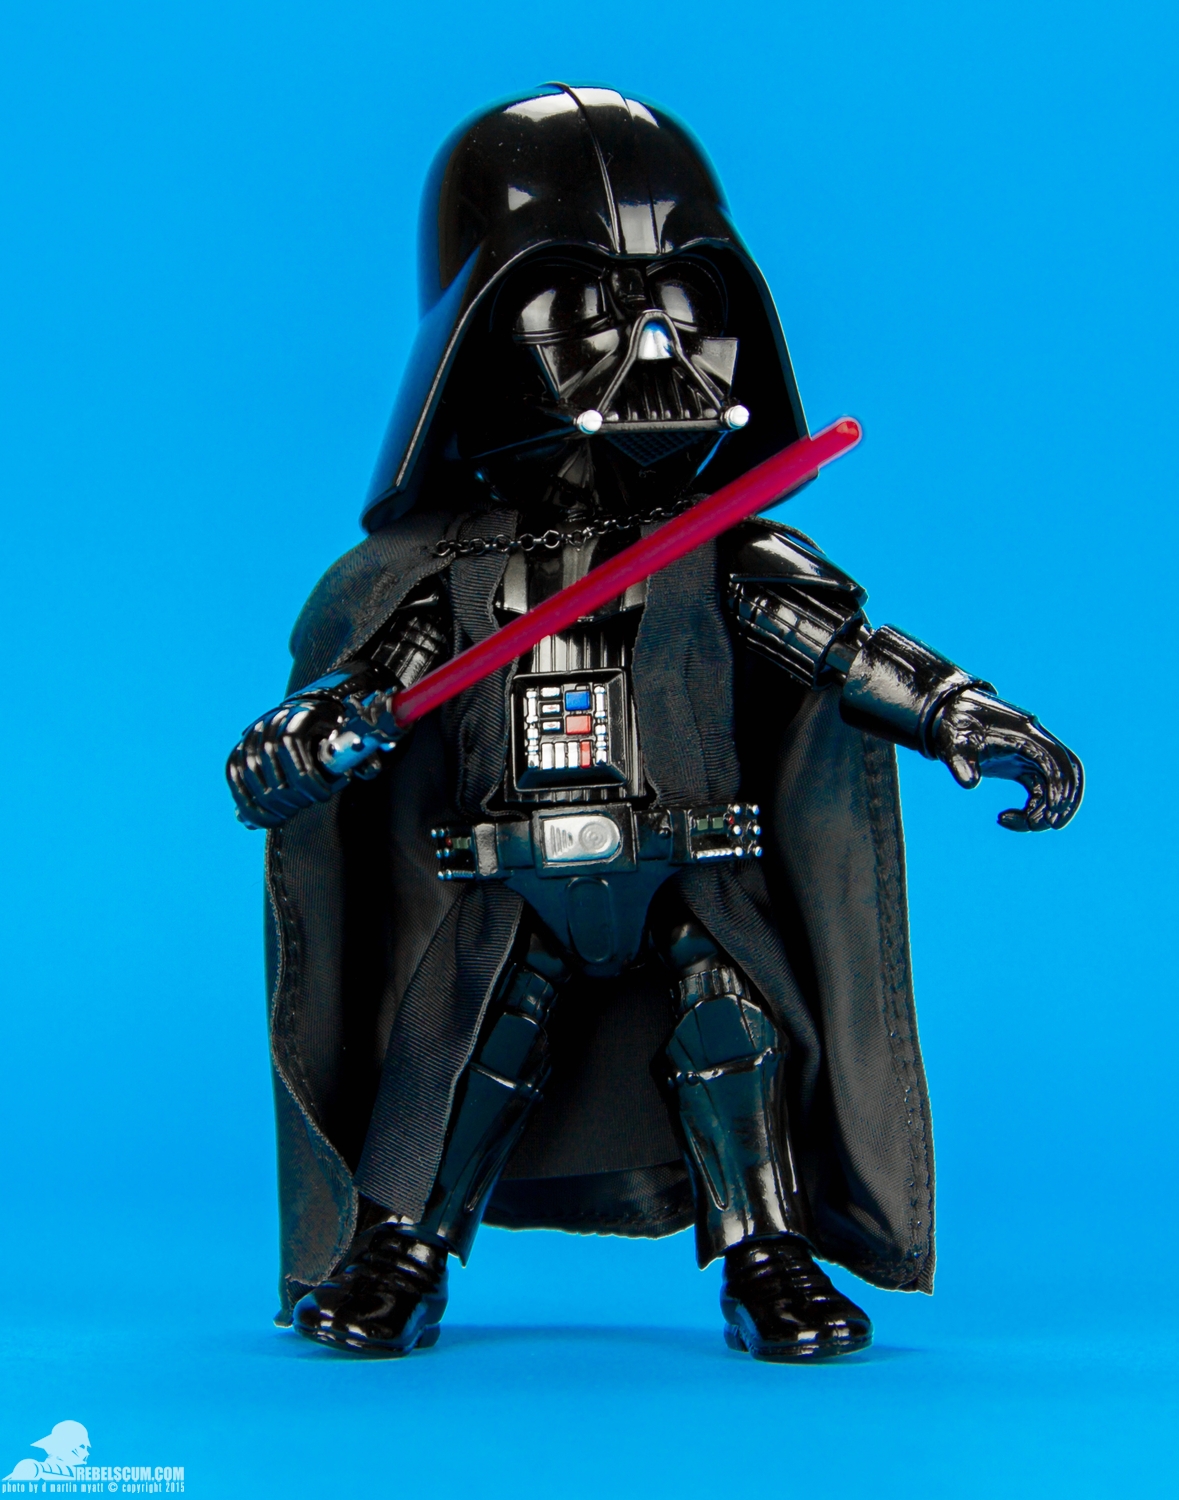 HMF011-Darth-Vader-Herocross-Hybrid-Metal-Figuration-019.jpg